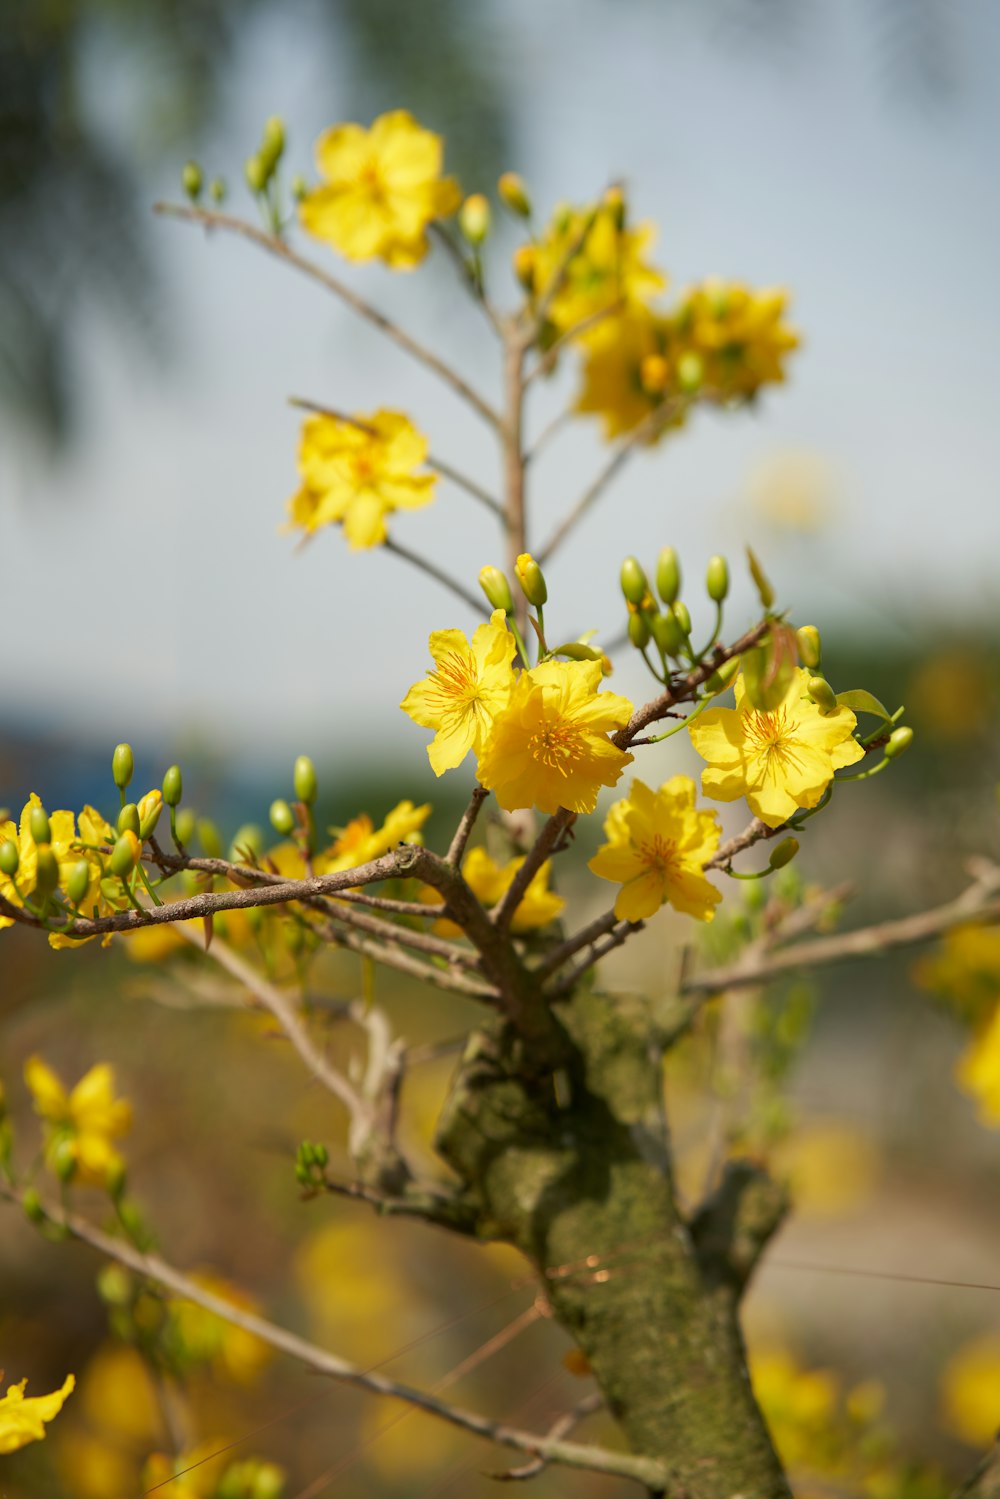 Nahaufnahme eines Baumes mit gelben Blüten